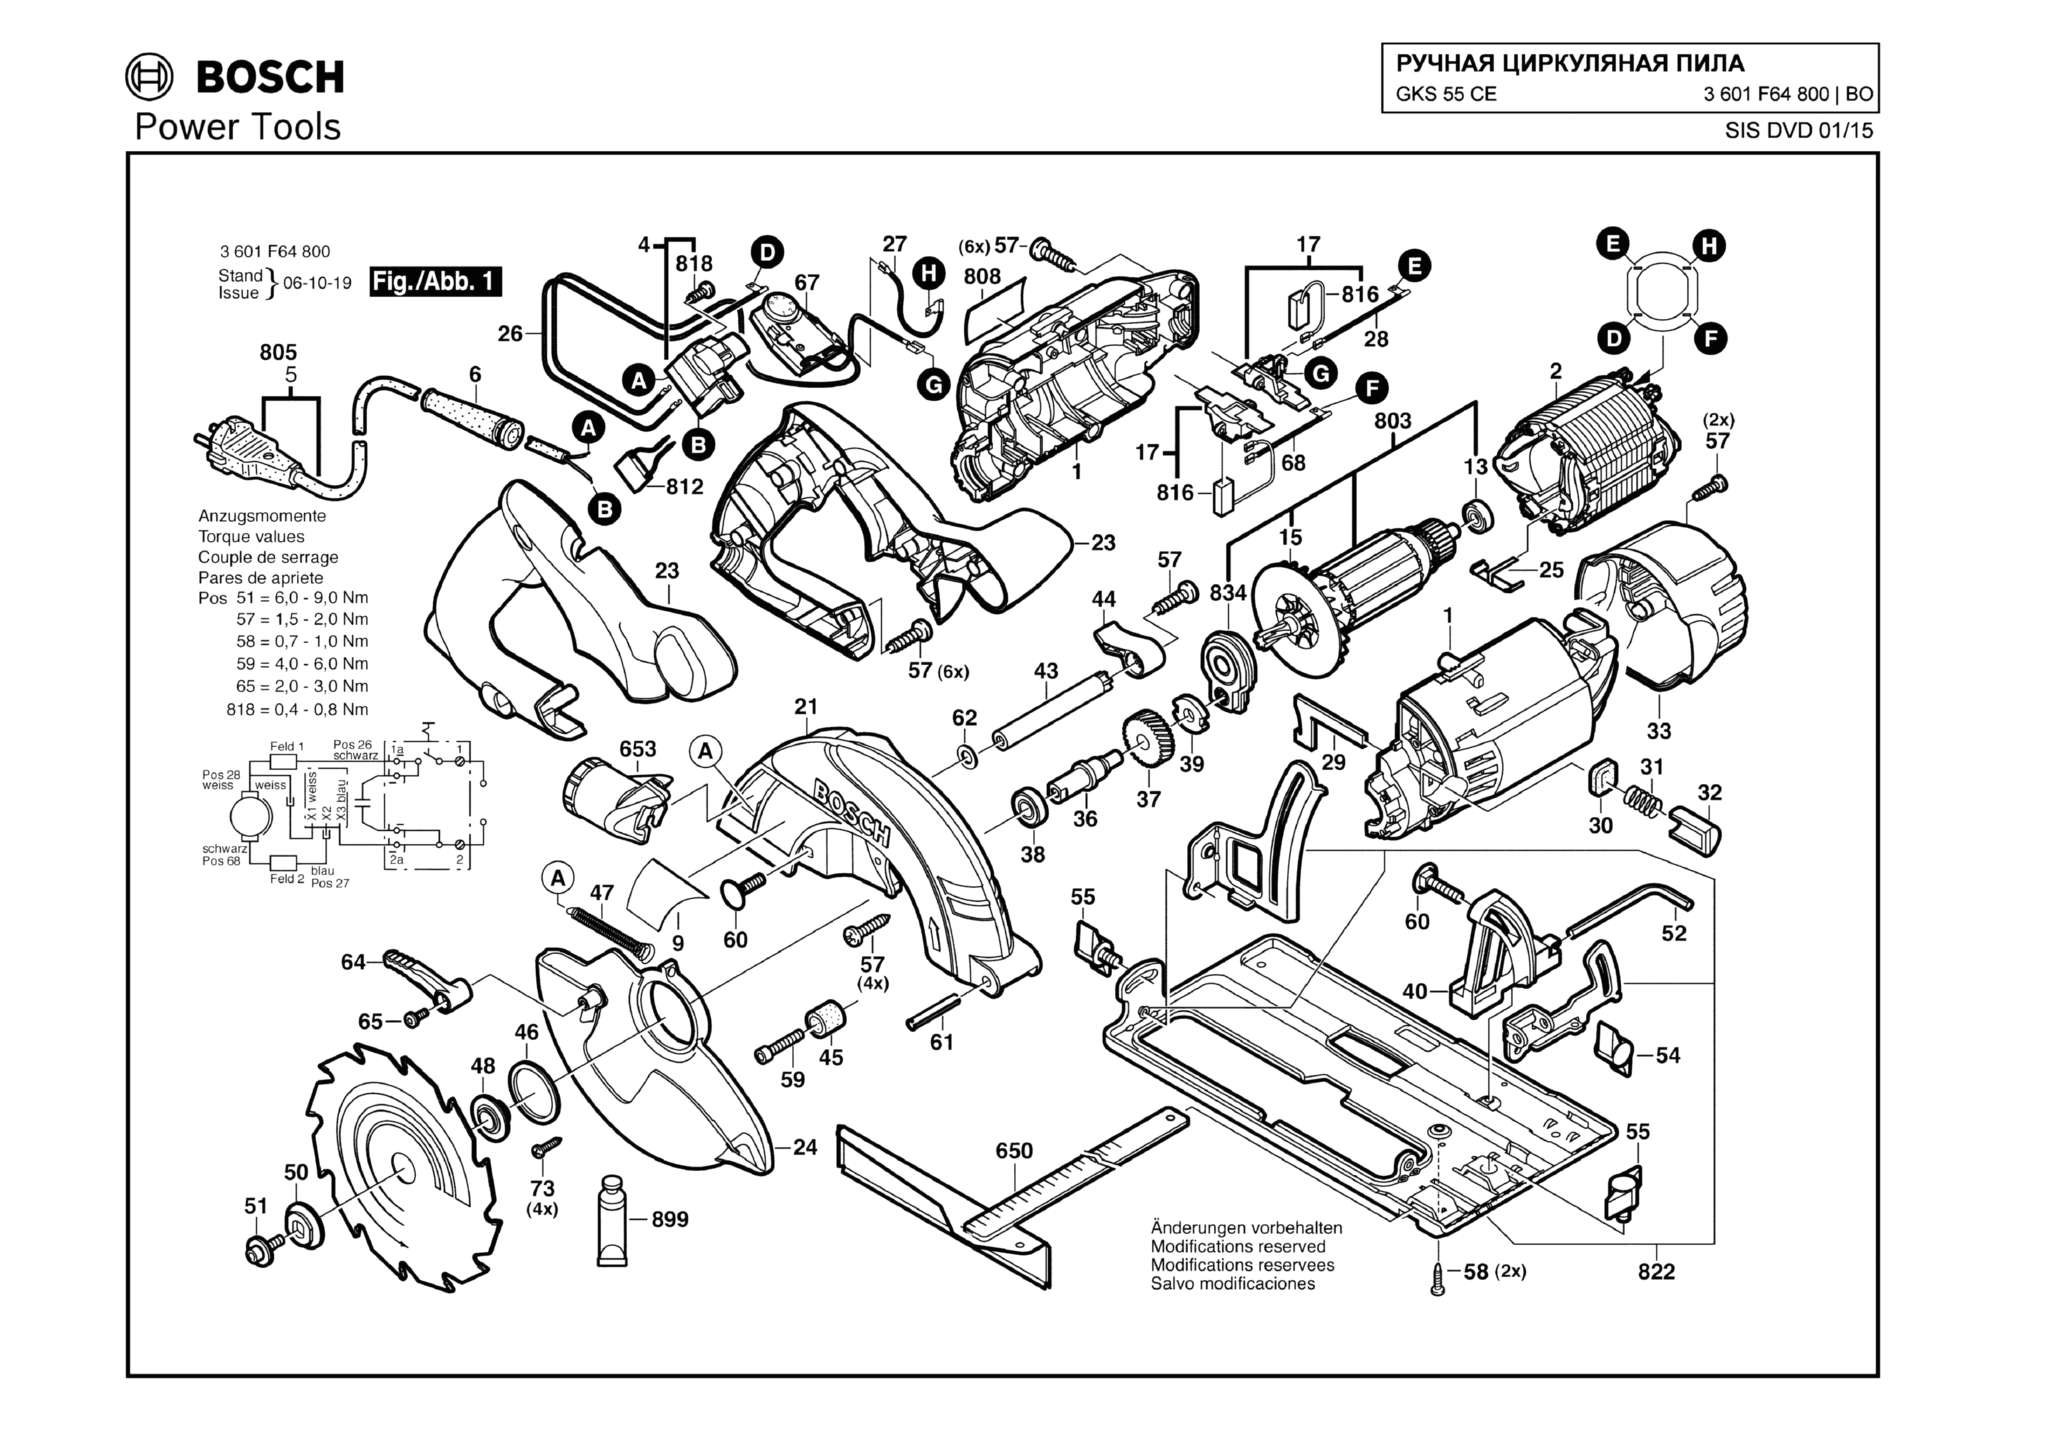 Запчасти, схема и деталировка Bosch GKS 55 CE (ТИП 3601F64800)